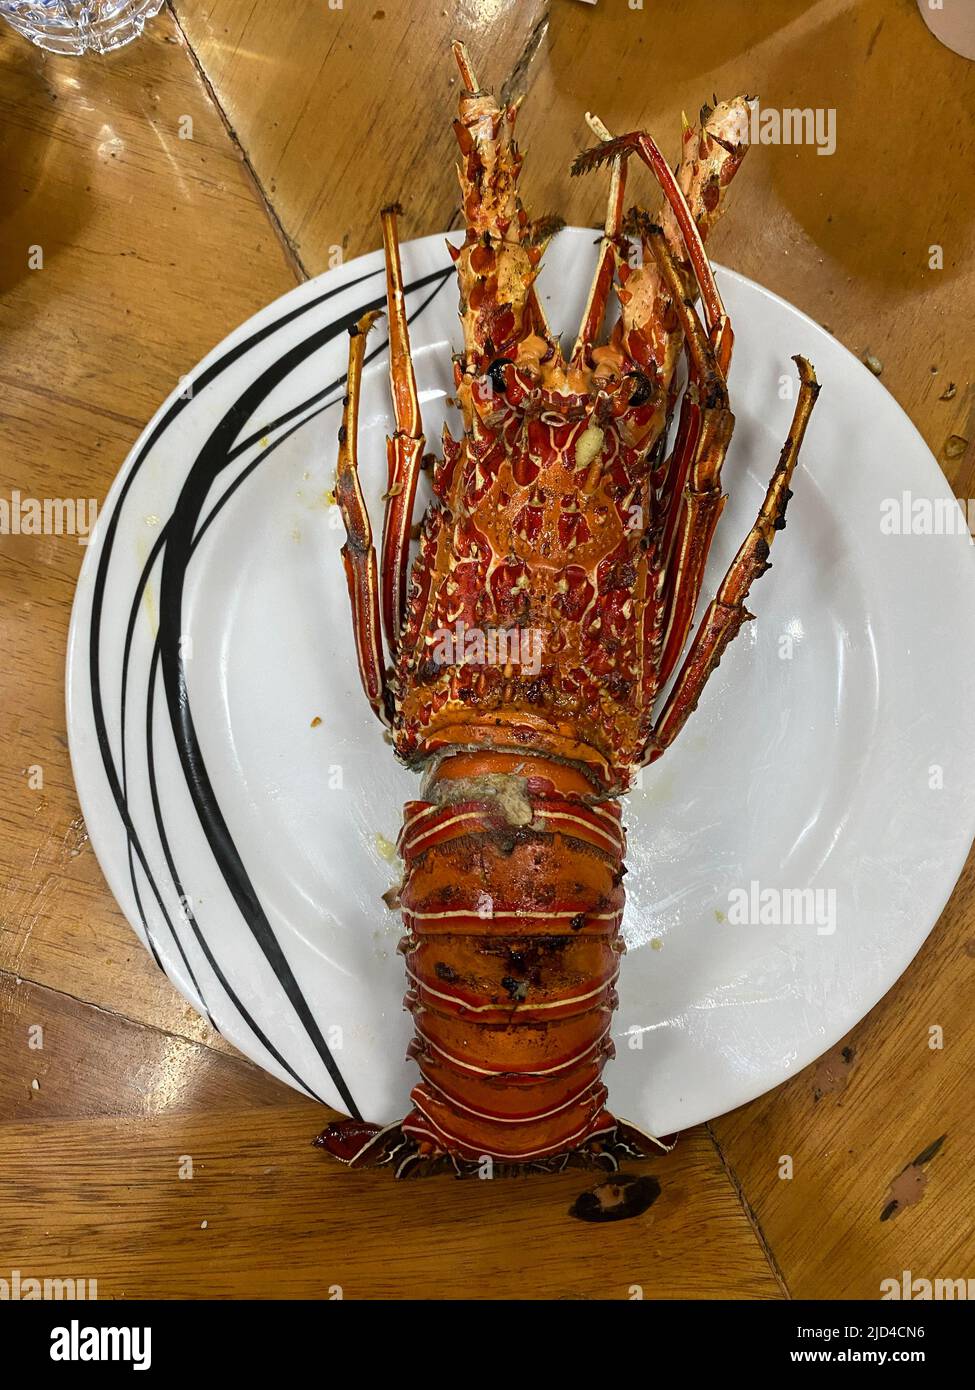 Foto di un'aragosta cotta banagan, un grande crostacei marino servito su un piatto una specialità di pesce Filippine. Foto Stock